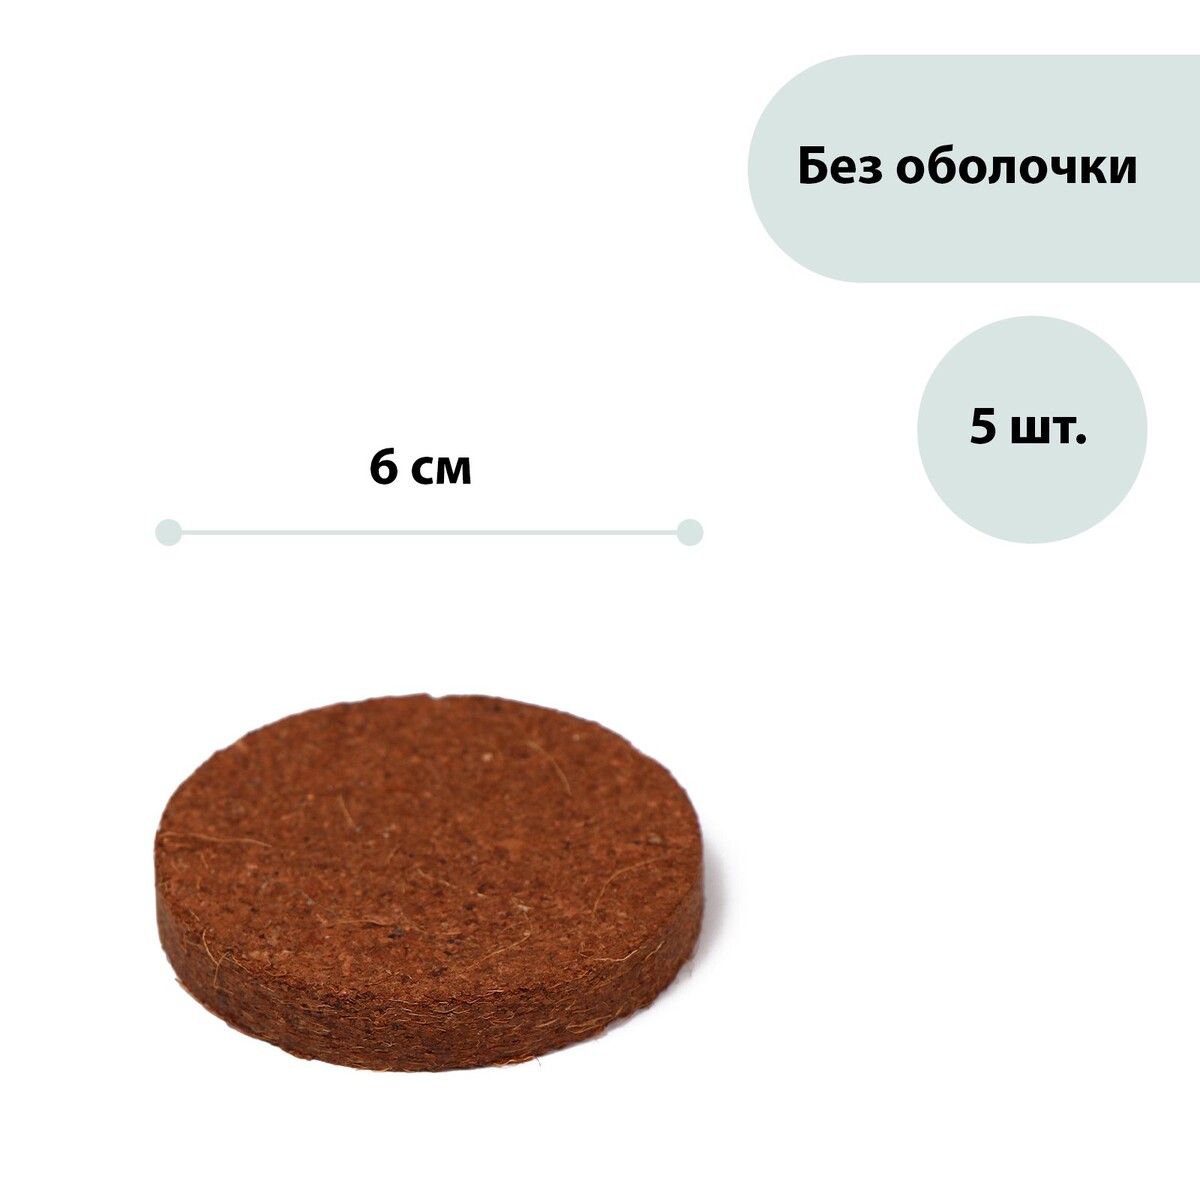 Таблетки кокосовые, d = 6 см, набор 5 шт., без оболочки, greengo йодомарин таблетки 200мкг 100